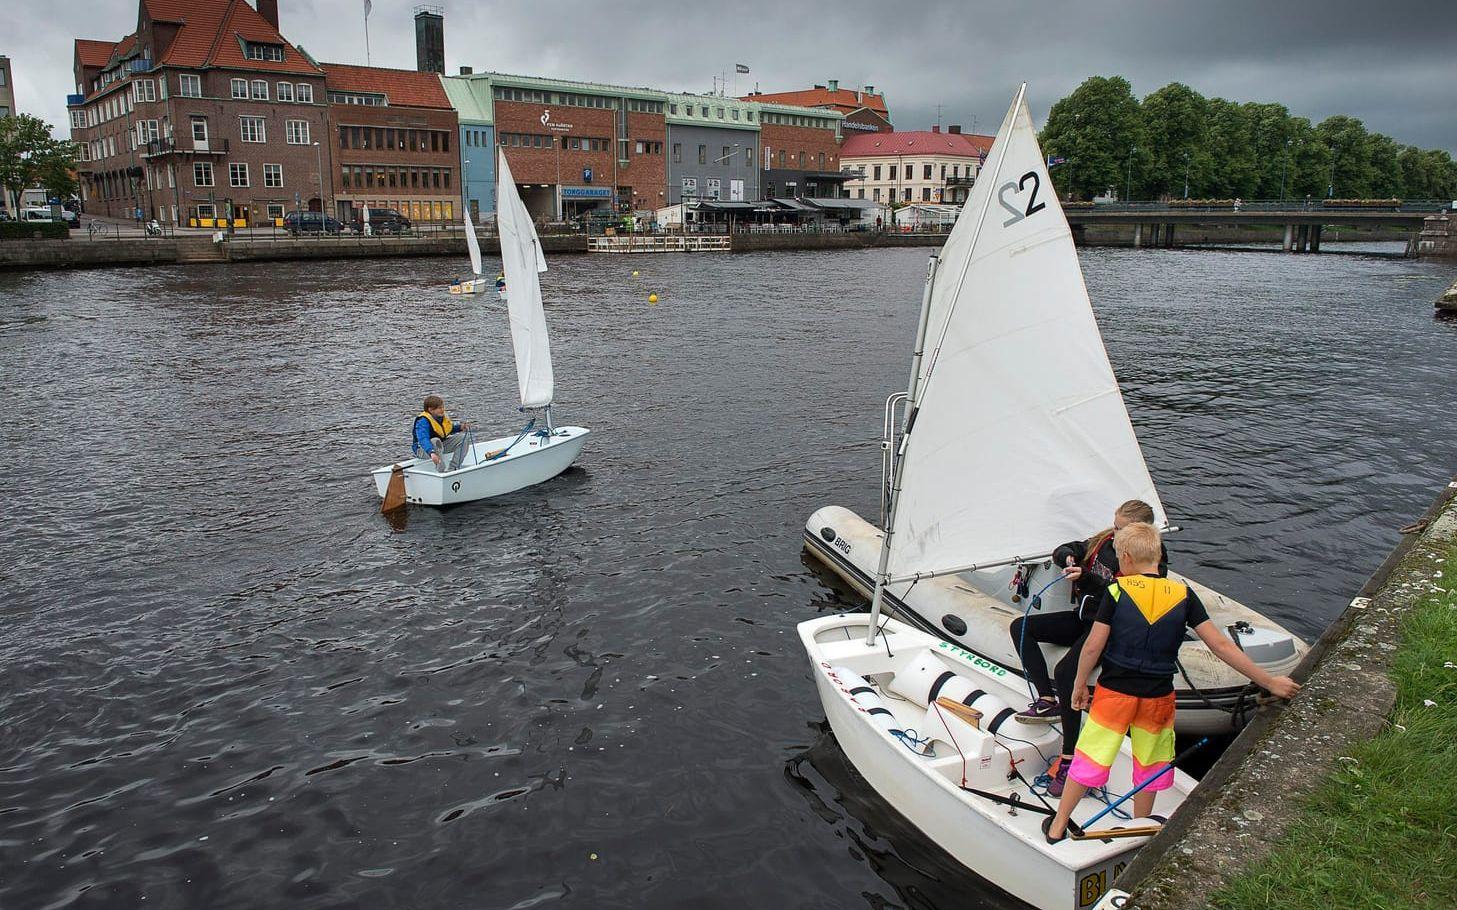 "Det roliga med segling är att det går fort. Och den här båten är riktigt snabb", säger Elias Franklin, en av seglarskolans elever. Foto: Jörgen Alström